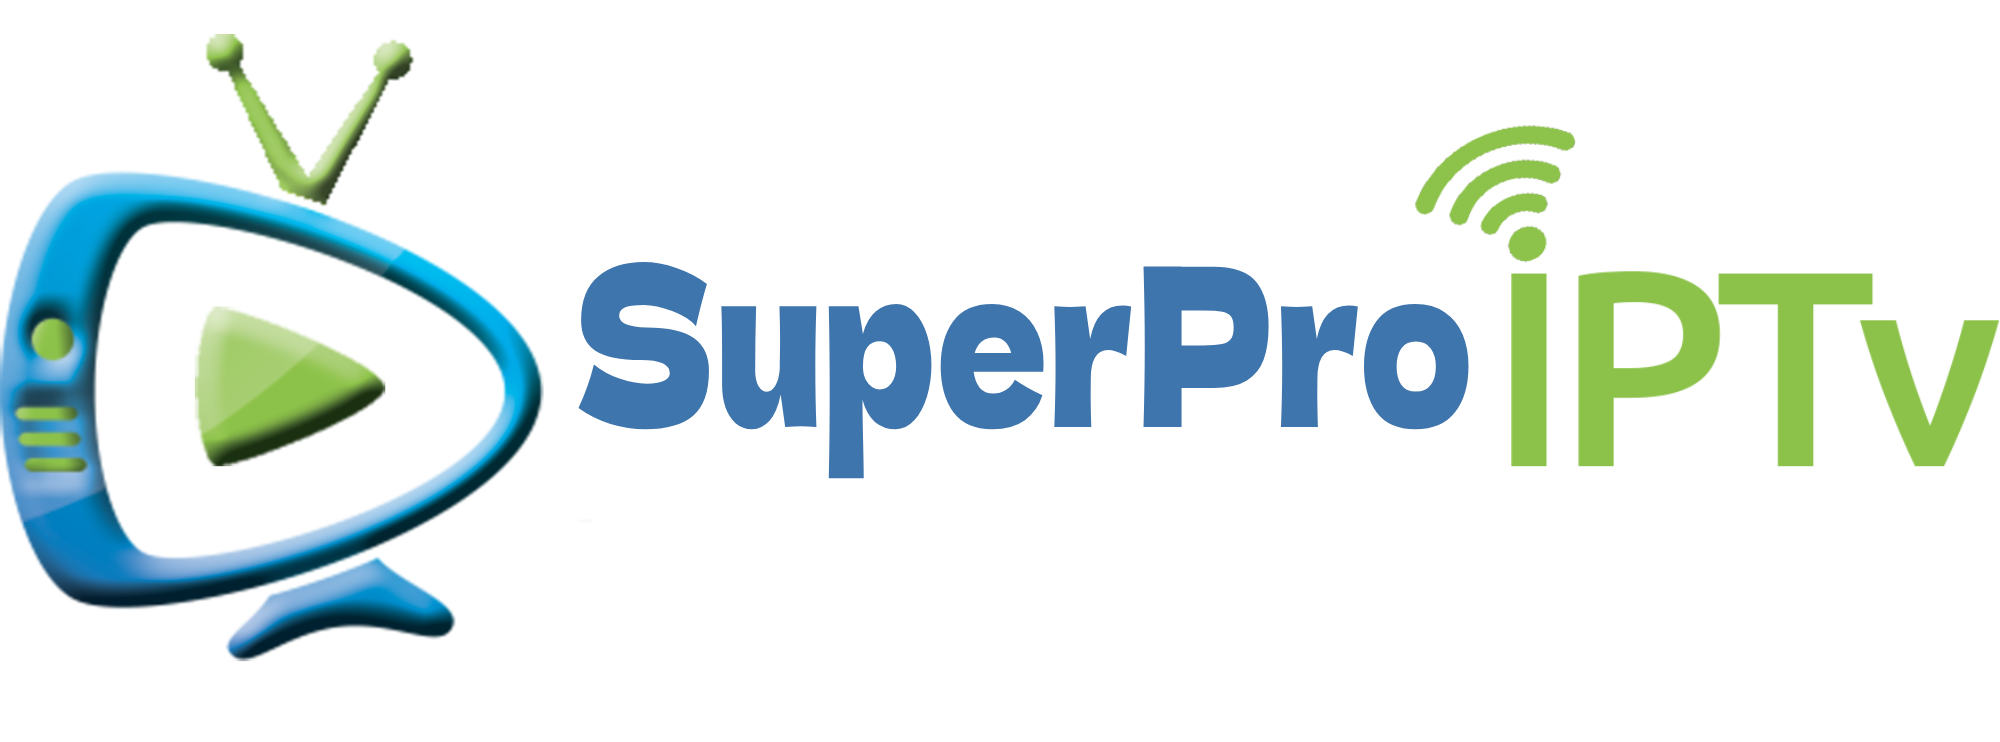 Super Pro IPTV